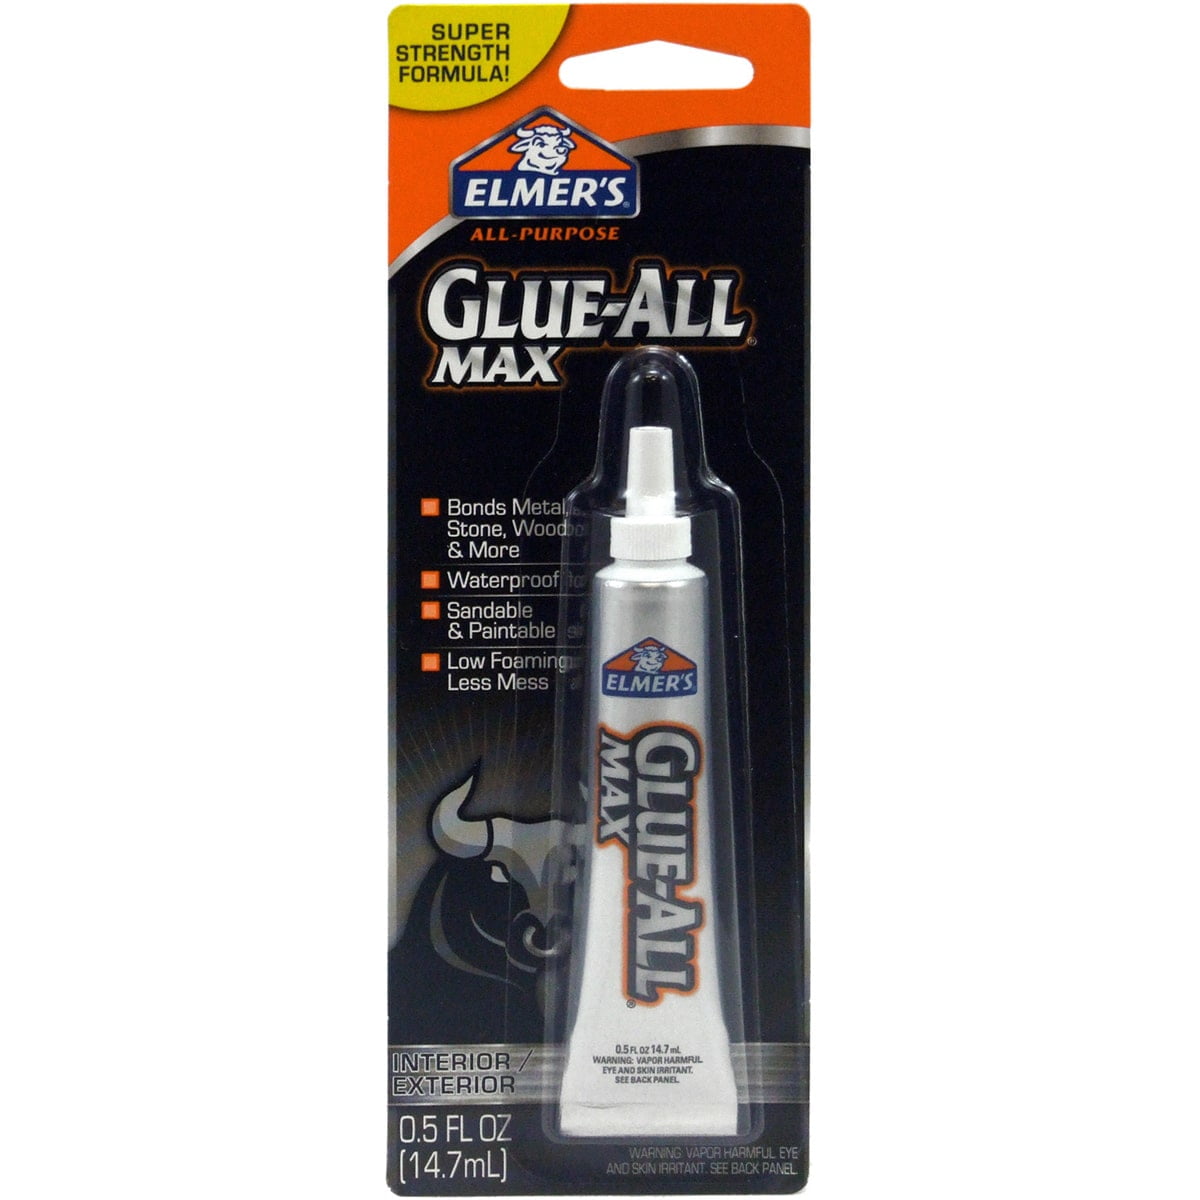 Glue — Nature's Workshop Plus